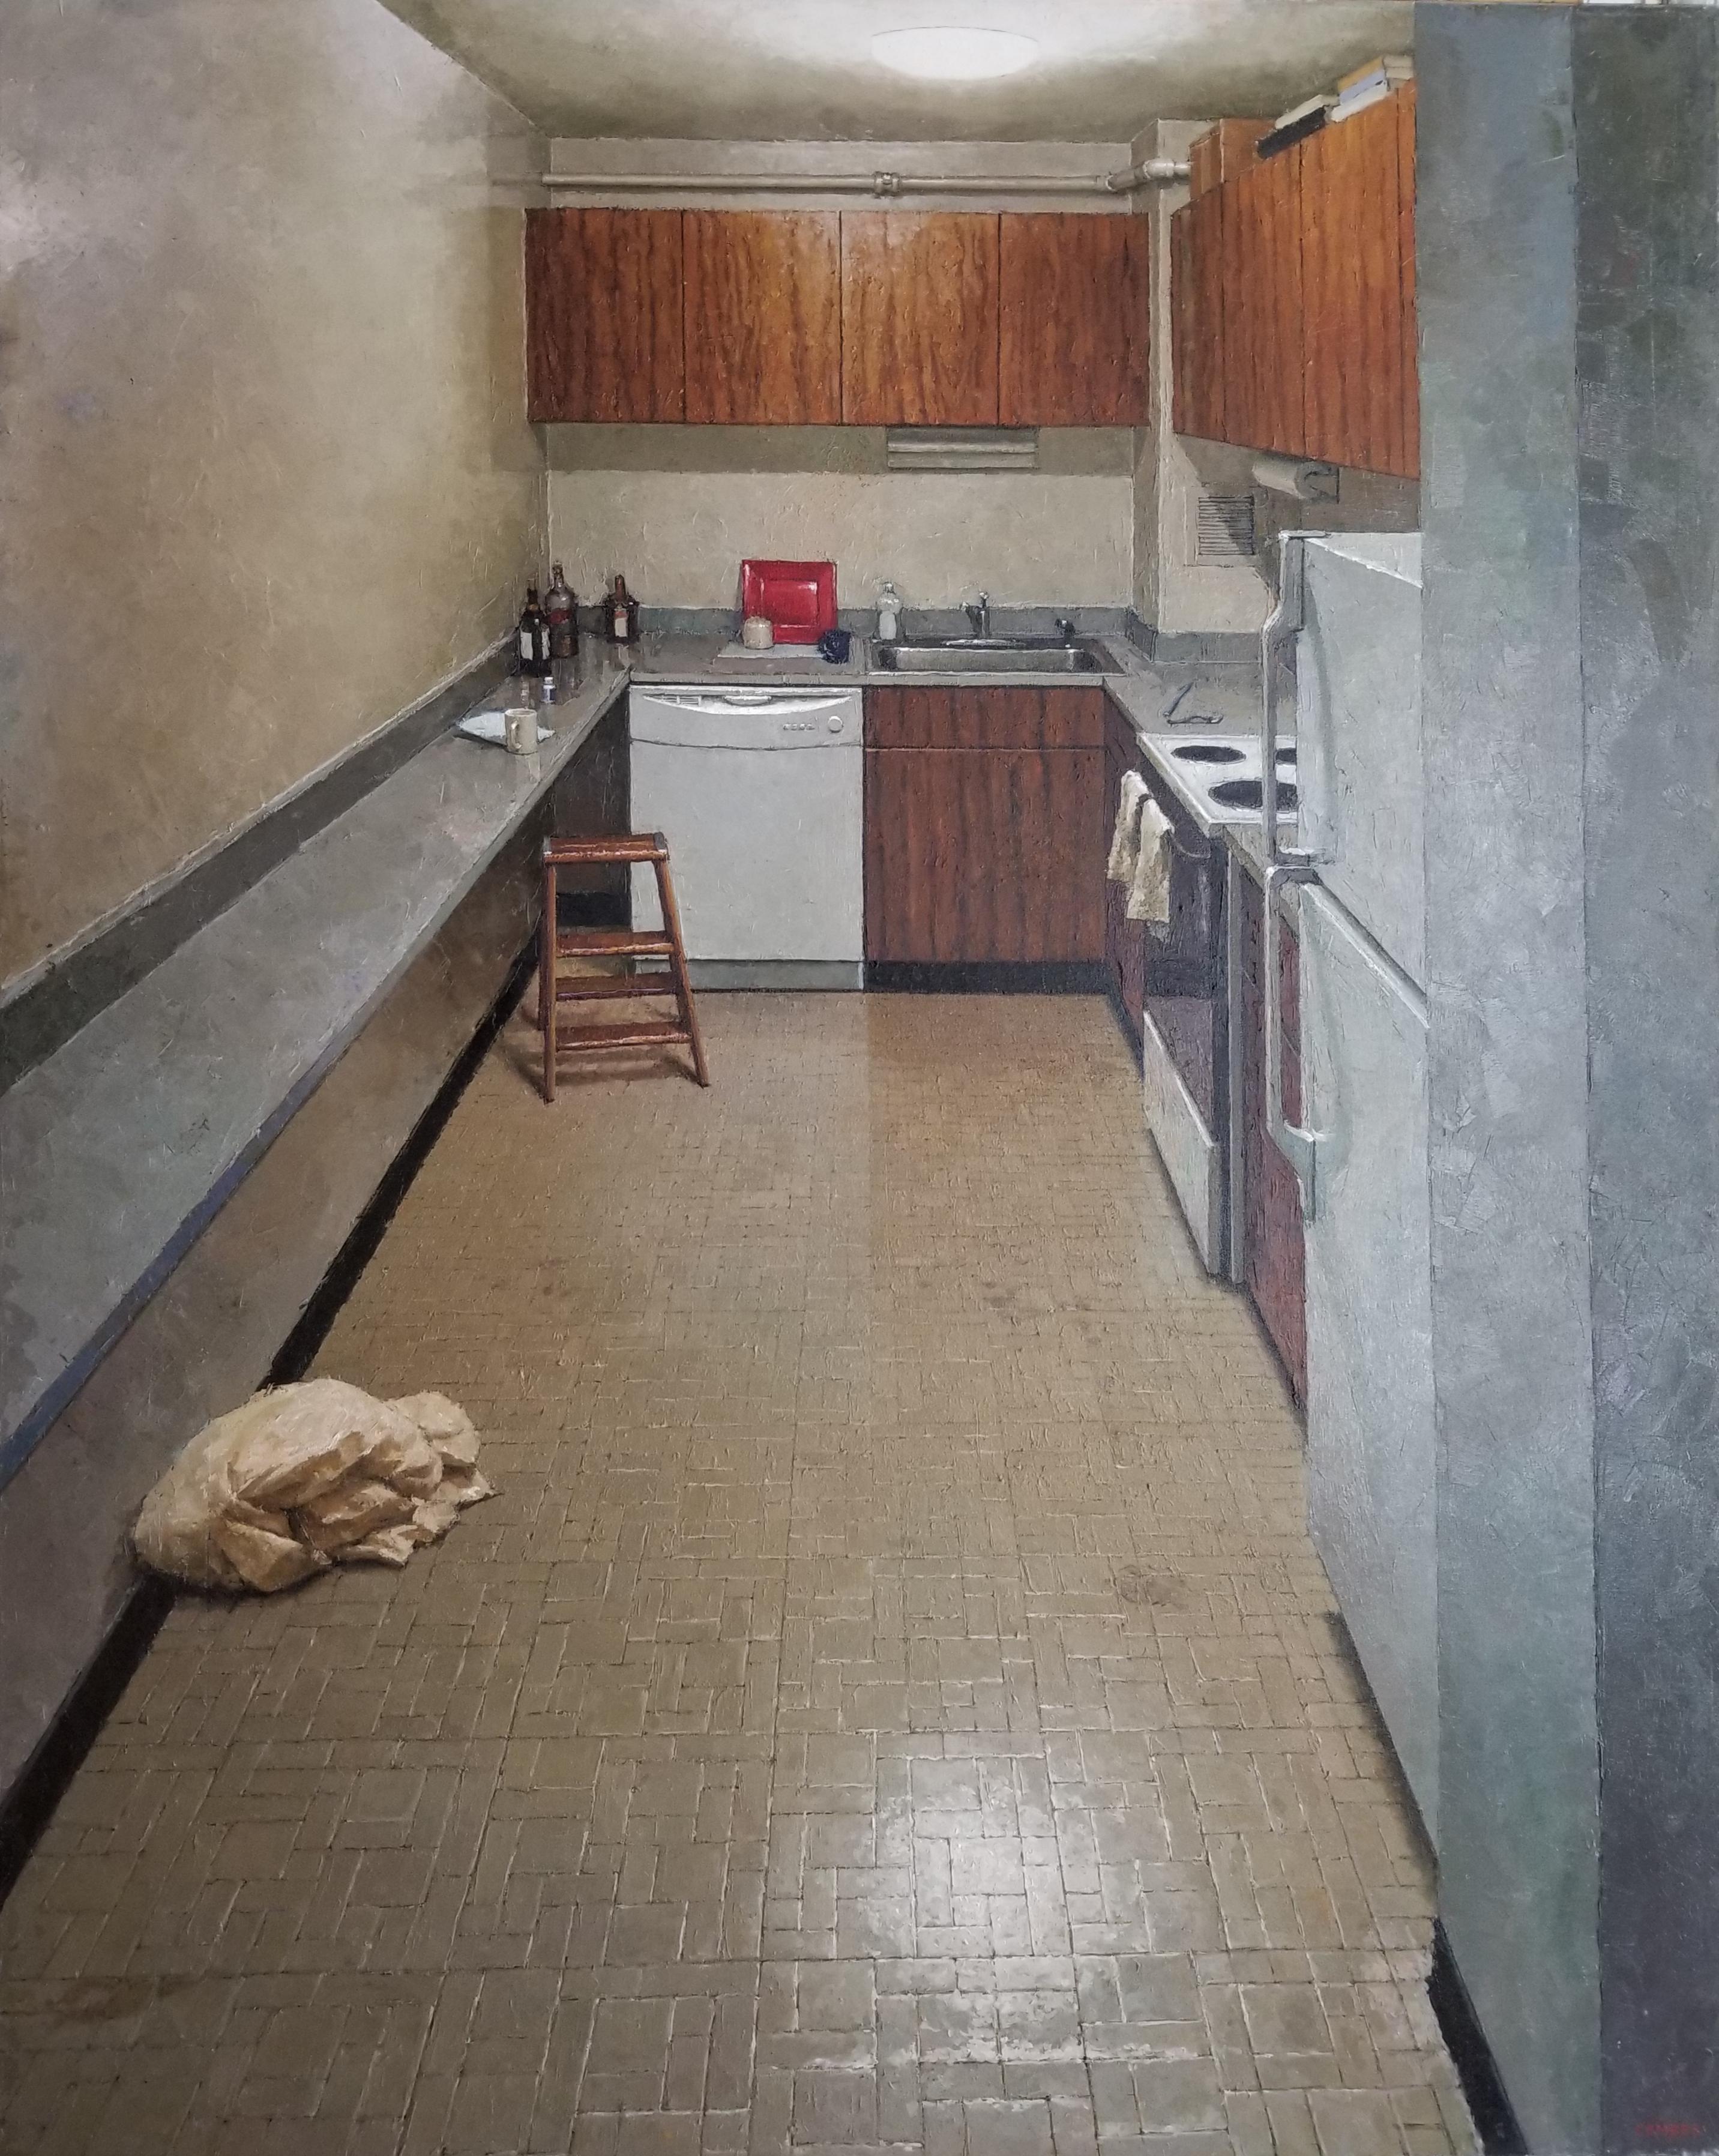 Richard Combes Interior Painting – THE KITCHEN, NYC - Inneneinrichtung / Kacheln / Muster / Realismus / Waschbecken / Rustikale